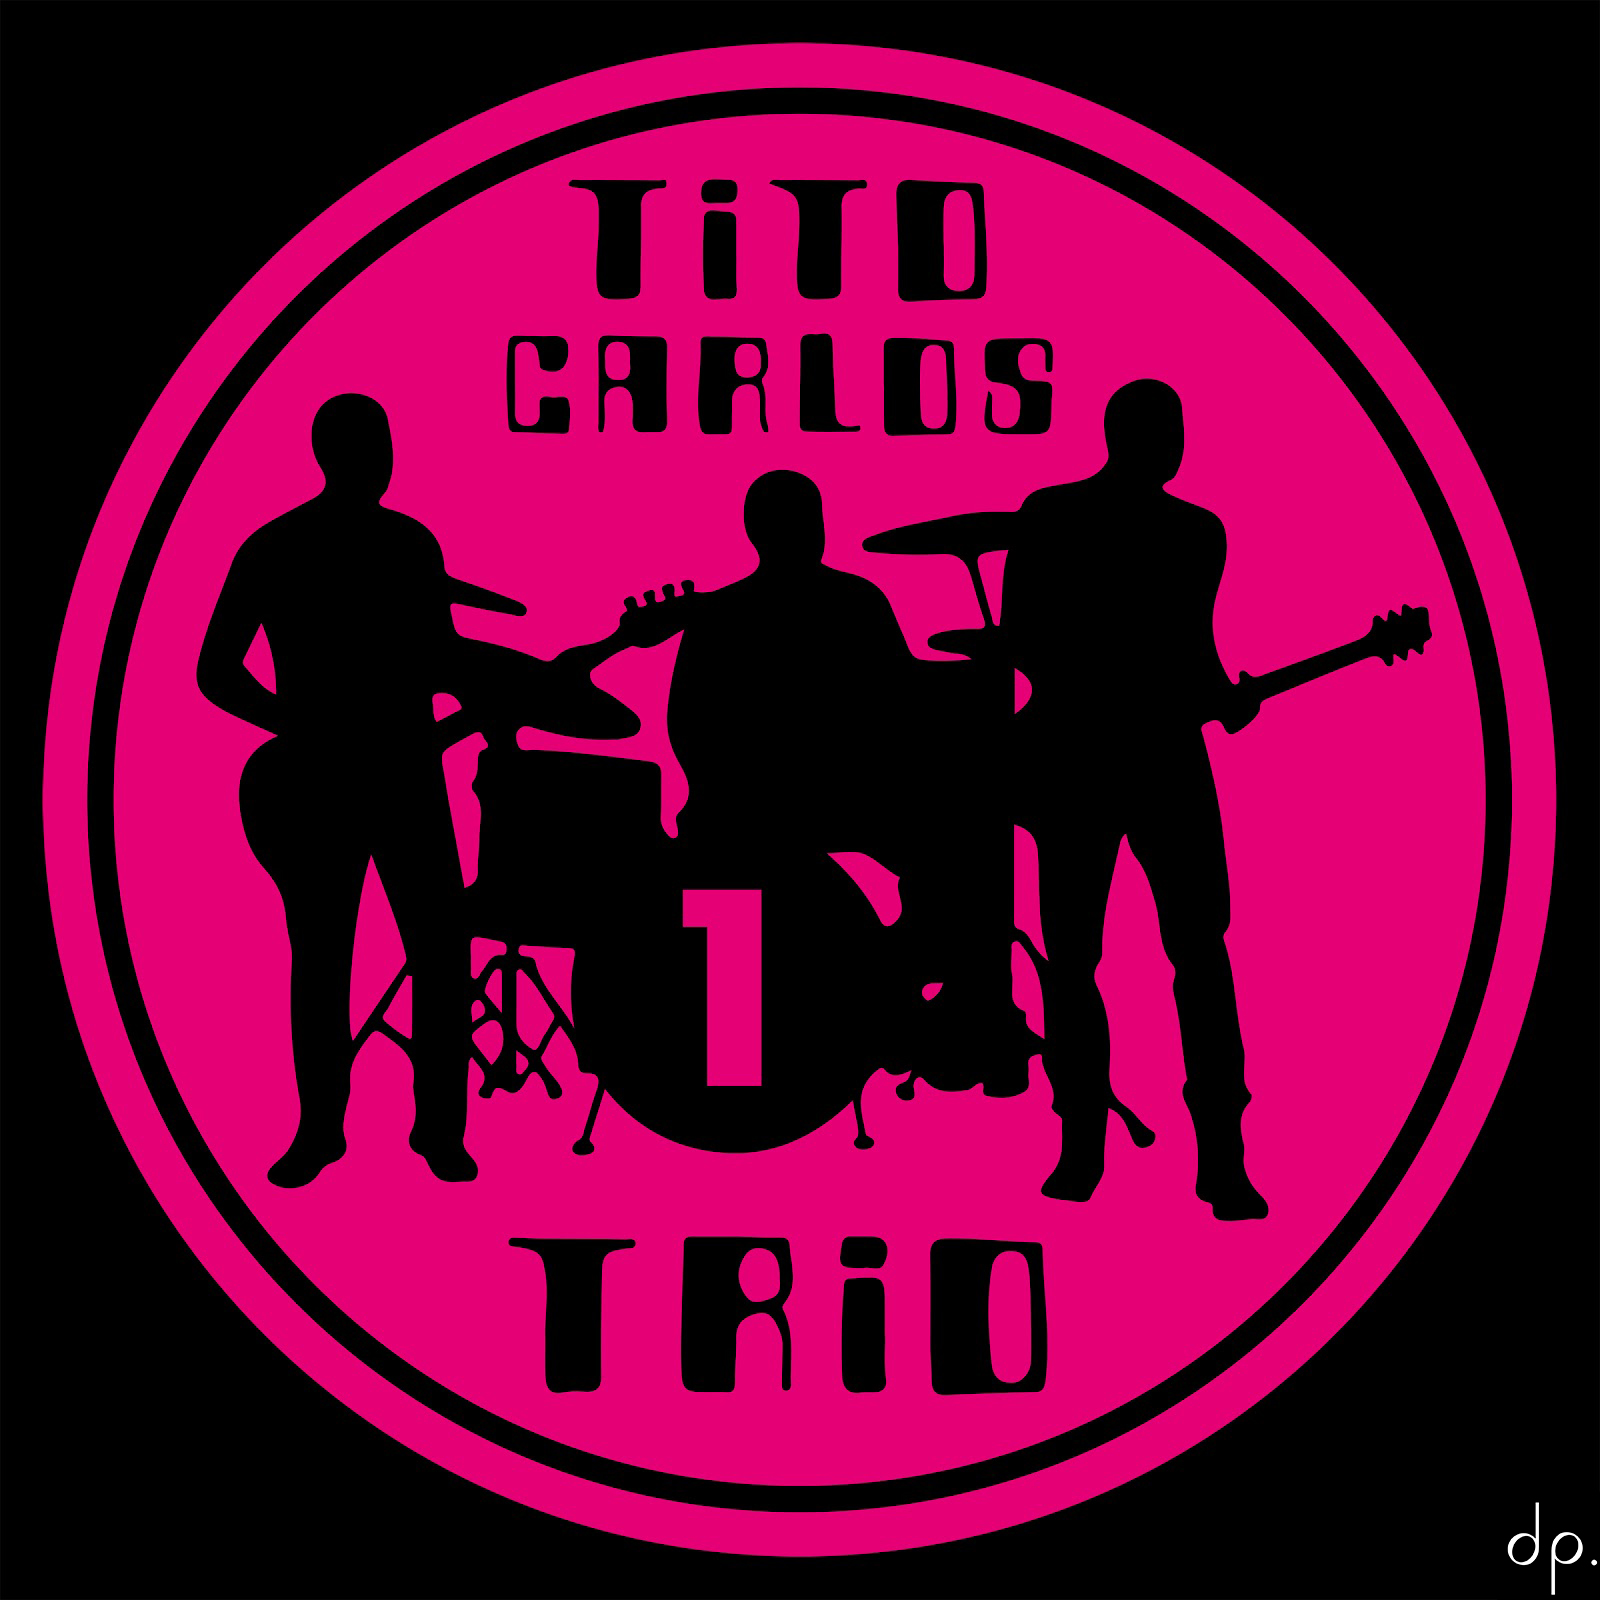 Tito Carlos Trio - Tito Carlos Trio 1